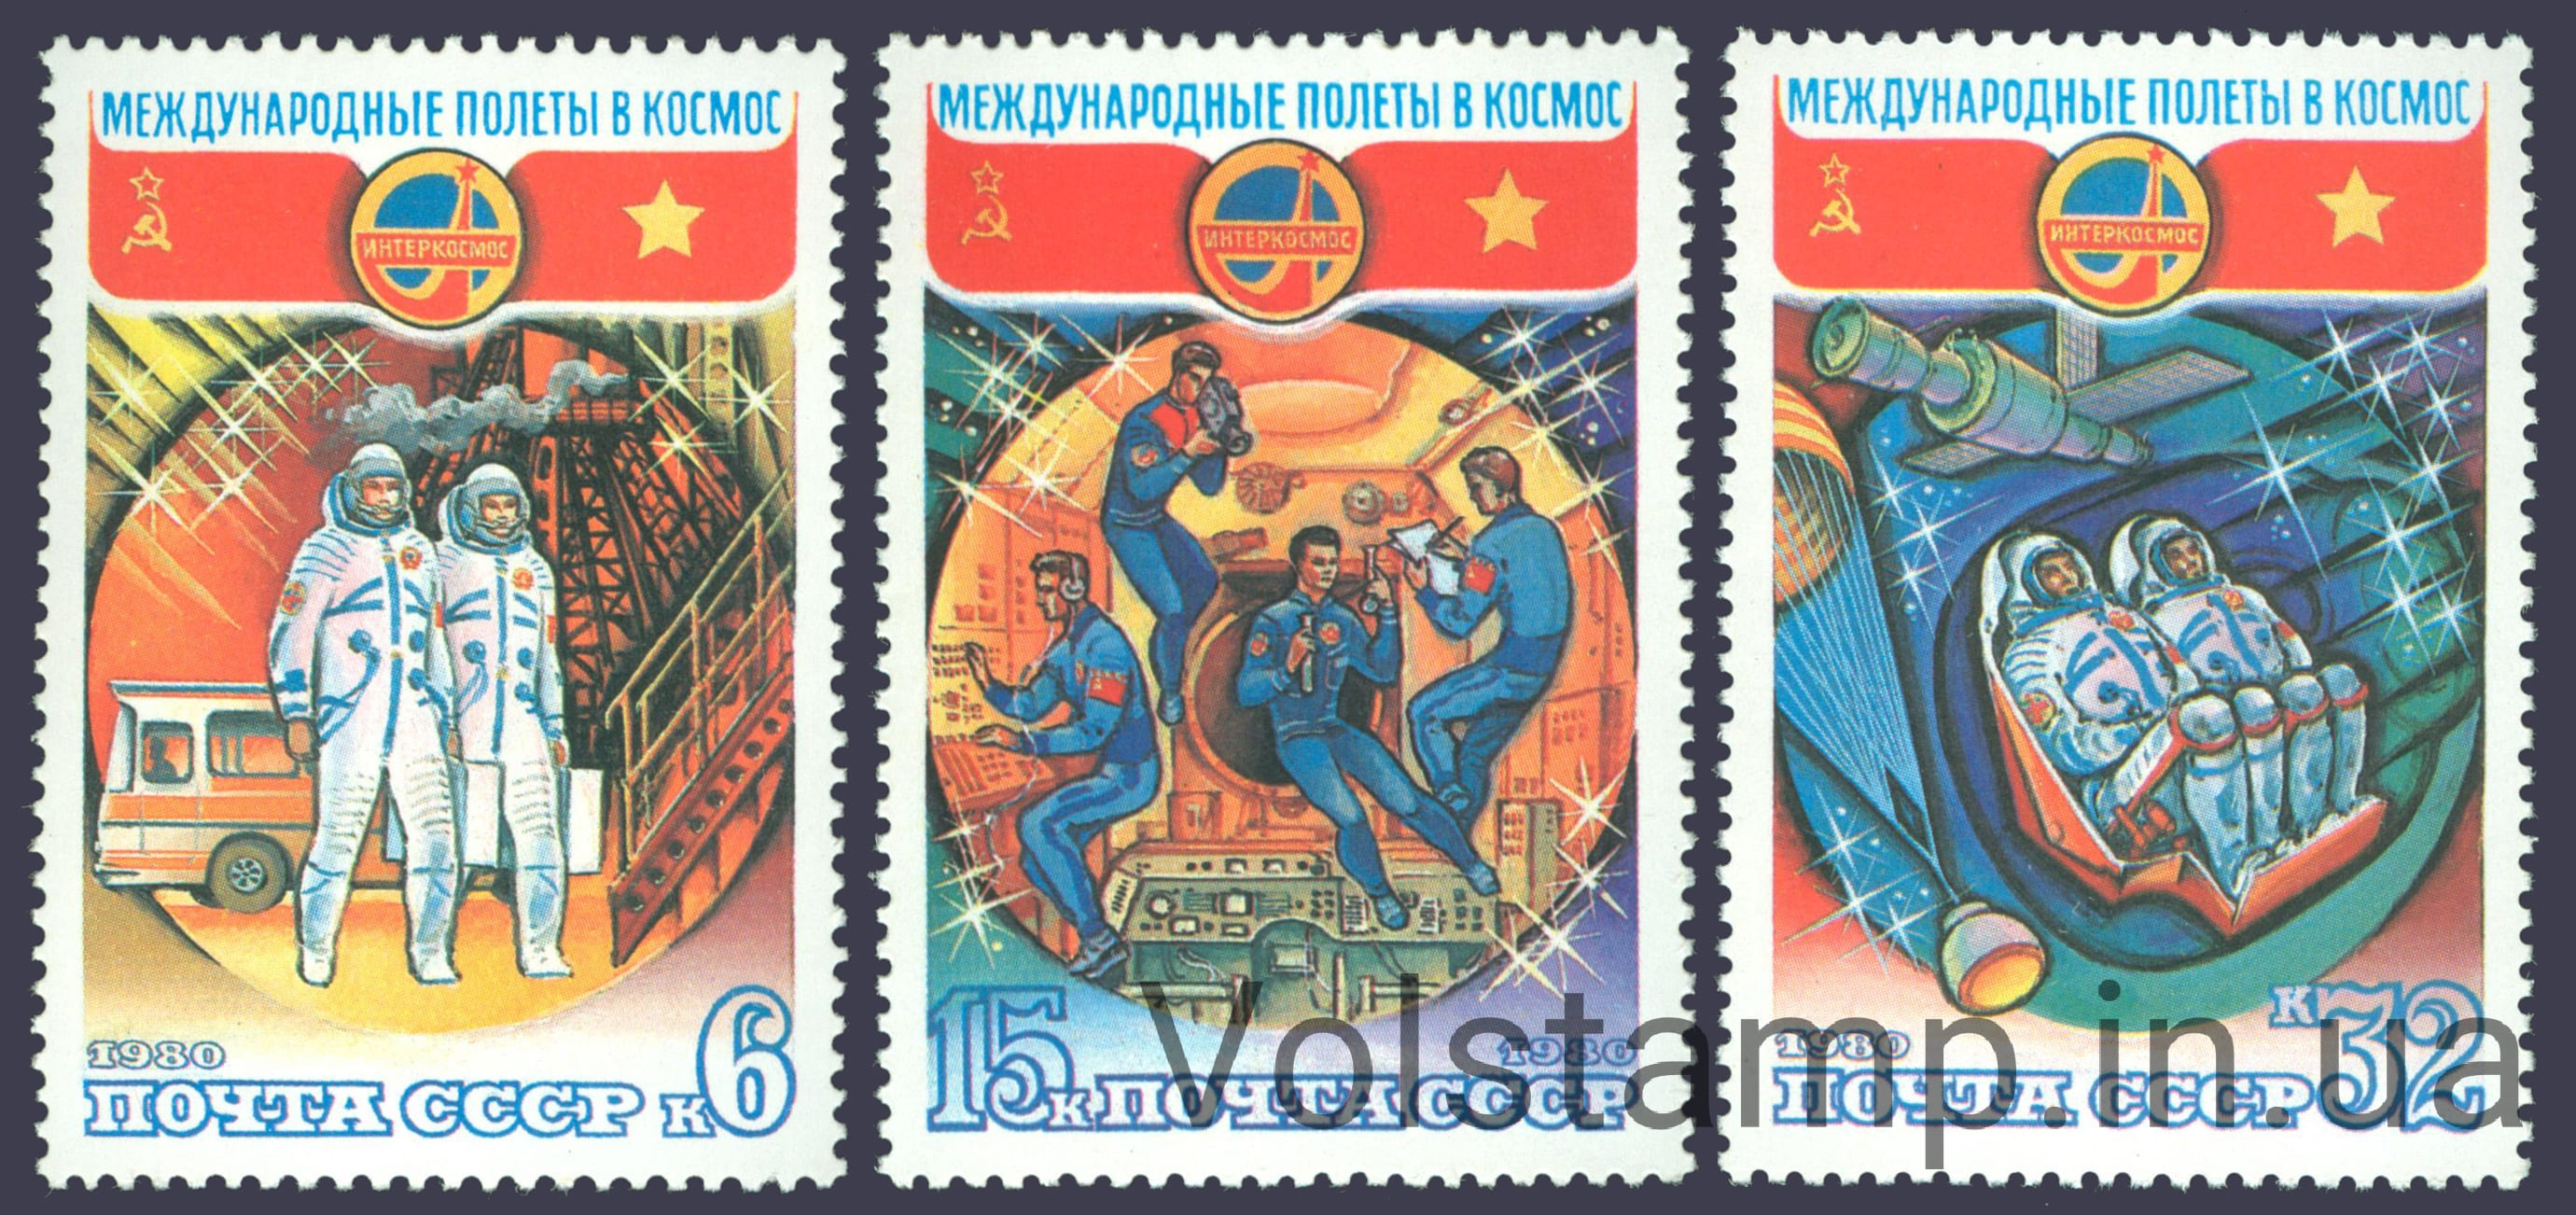 1980 серия марок Полет в космос шестого международного экипажа №5028-5030